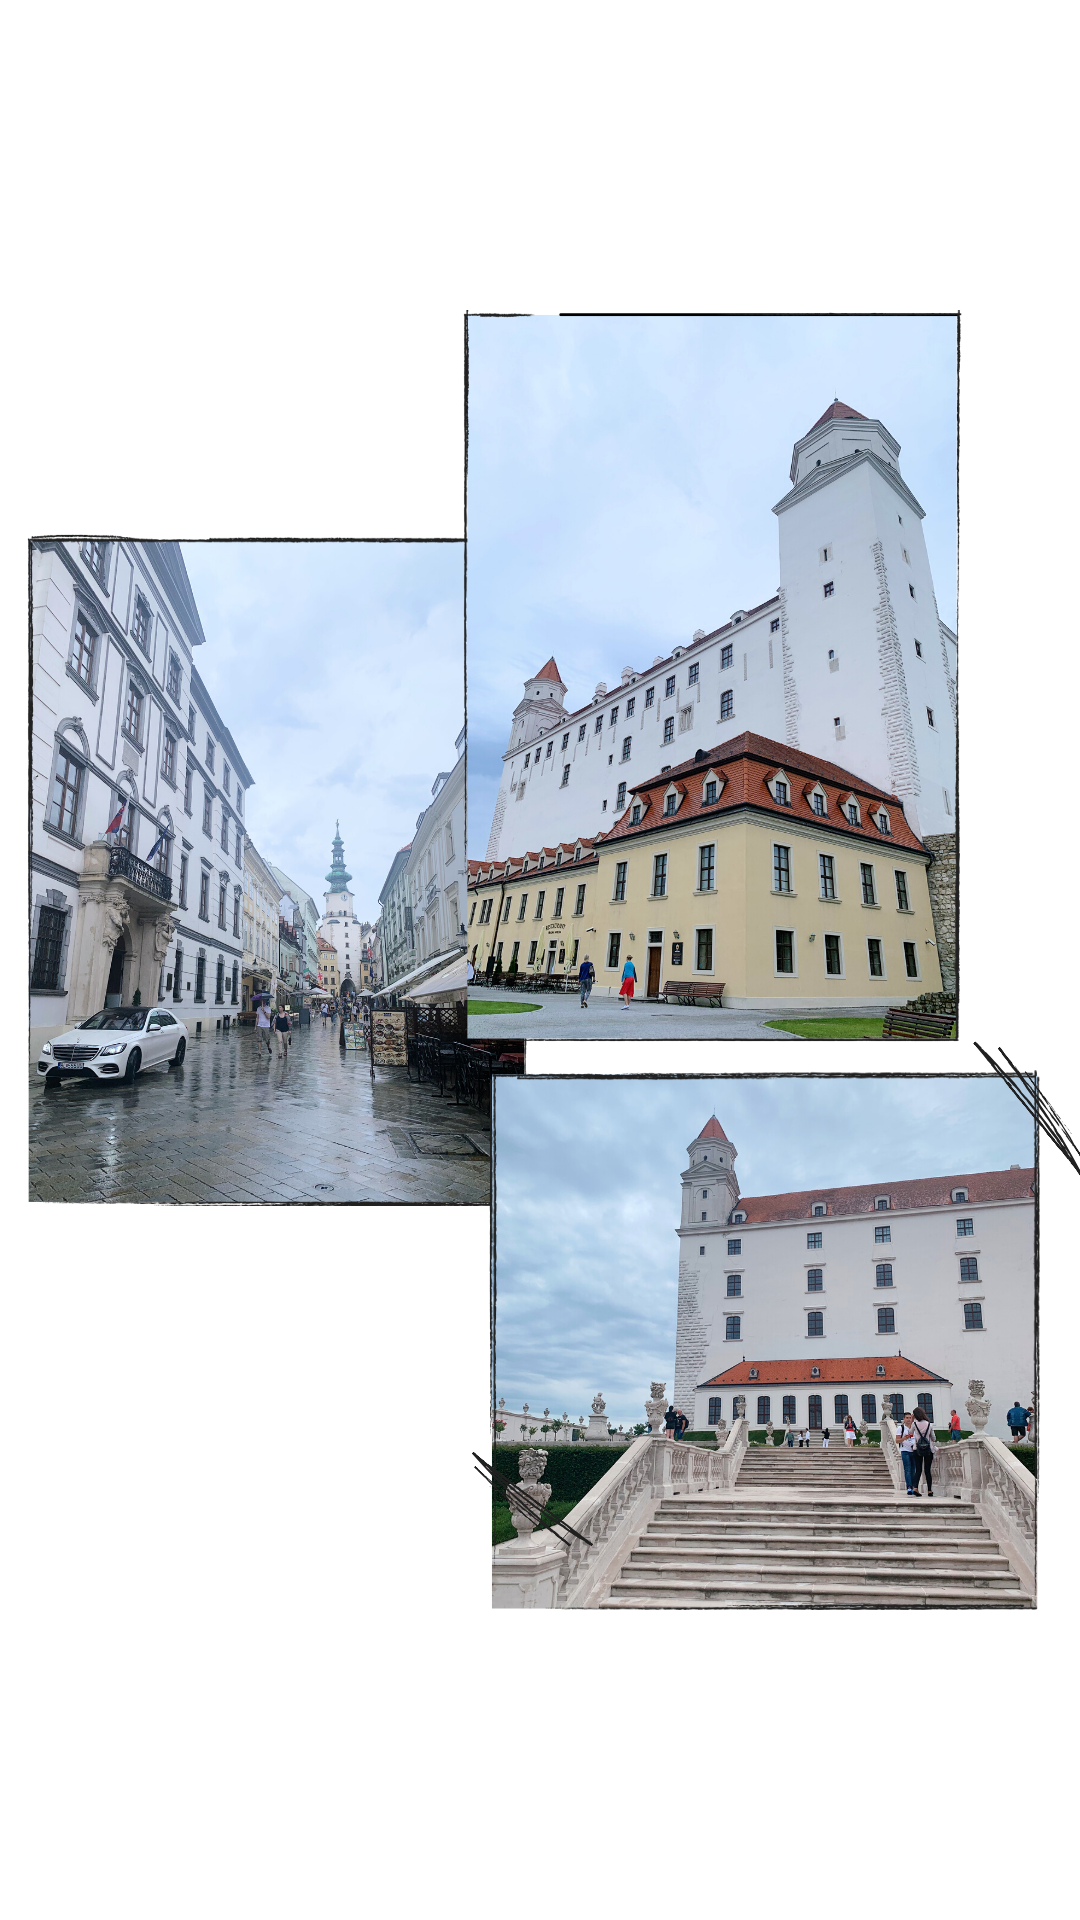 Shown on the Right: Bratislava Castle.